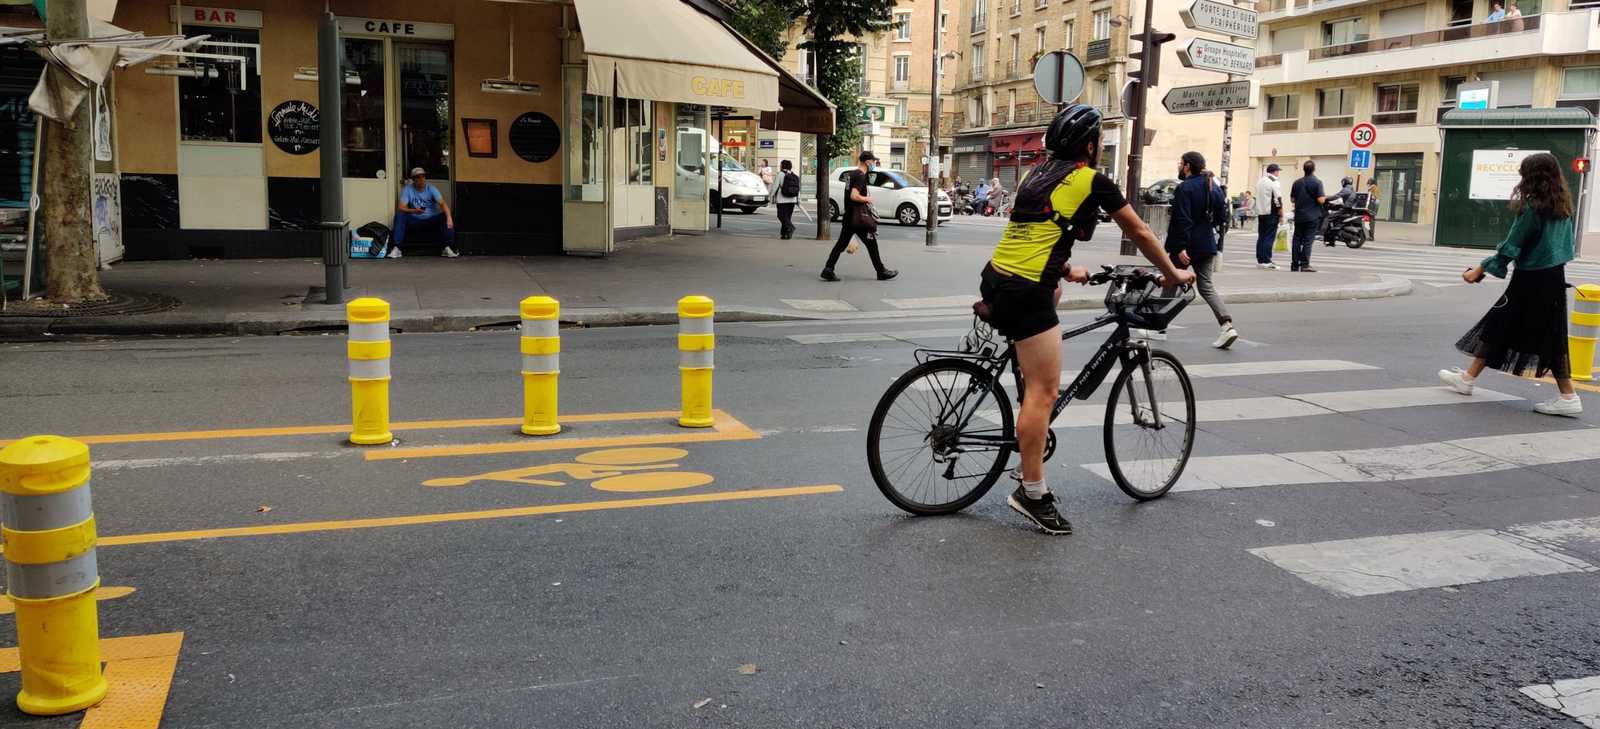 Placemkaing à Paris, ouverture pistes cyclable sur la voie centrale des rues, design mobilité droit à la ville urbanisme bycicliste